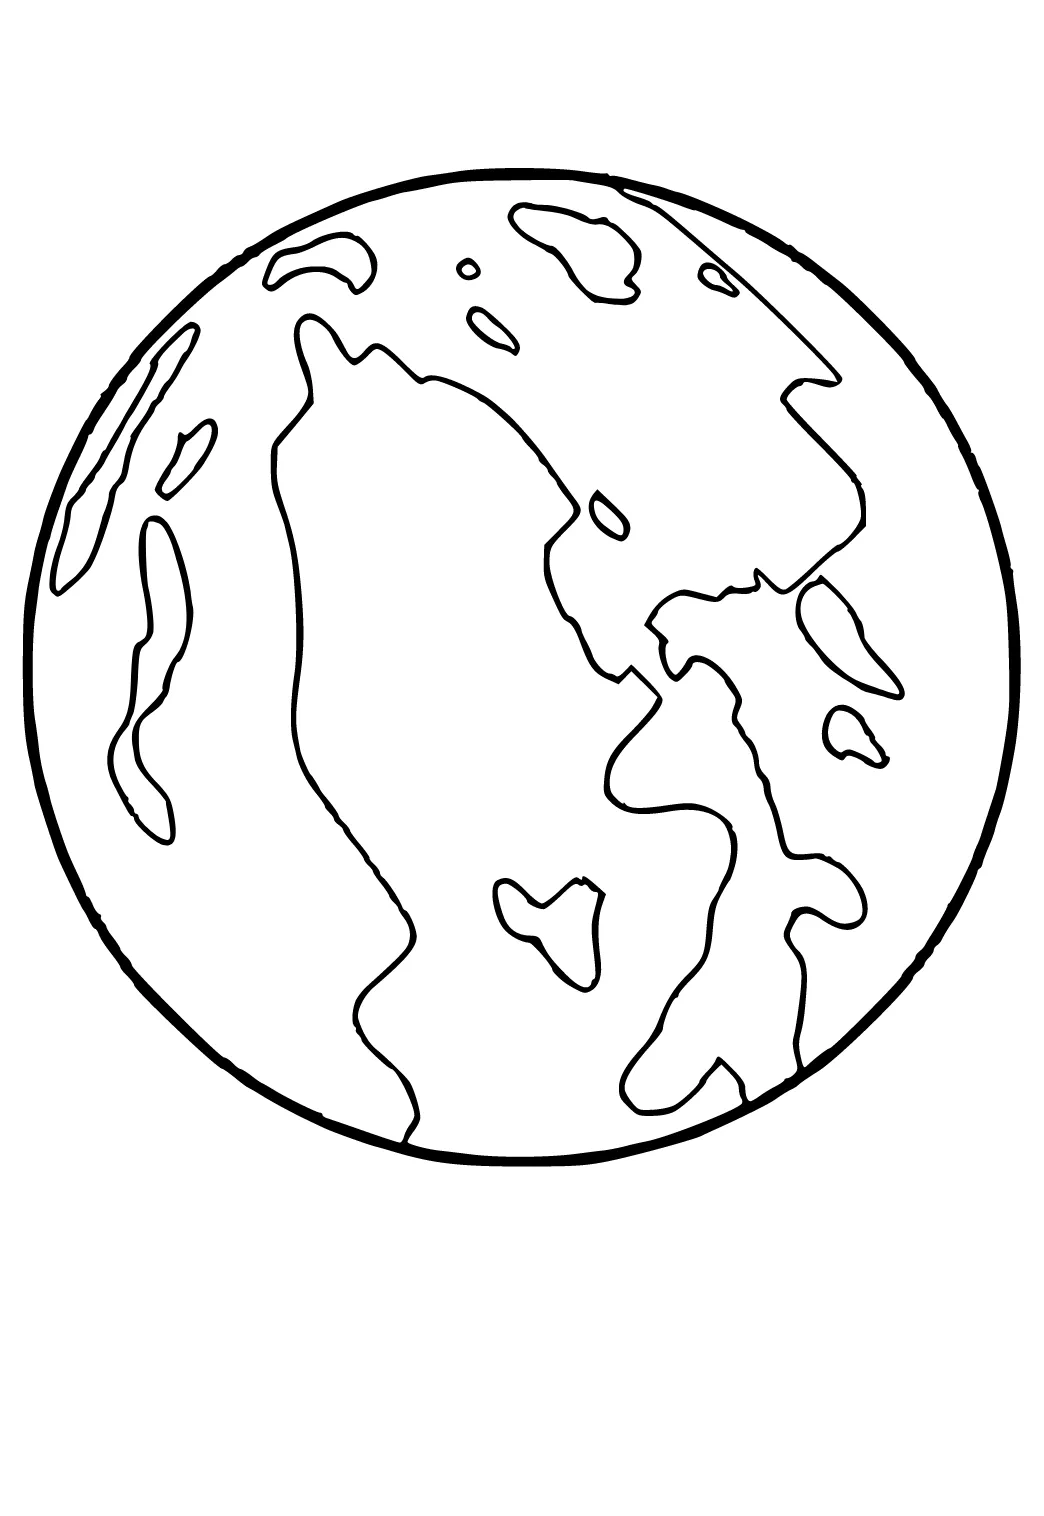 Dibujo e Imagen Planeta Tierra para Colorear y Imprimir Gratis para Adultos  y Niños - Lystok.com